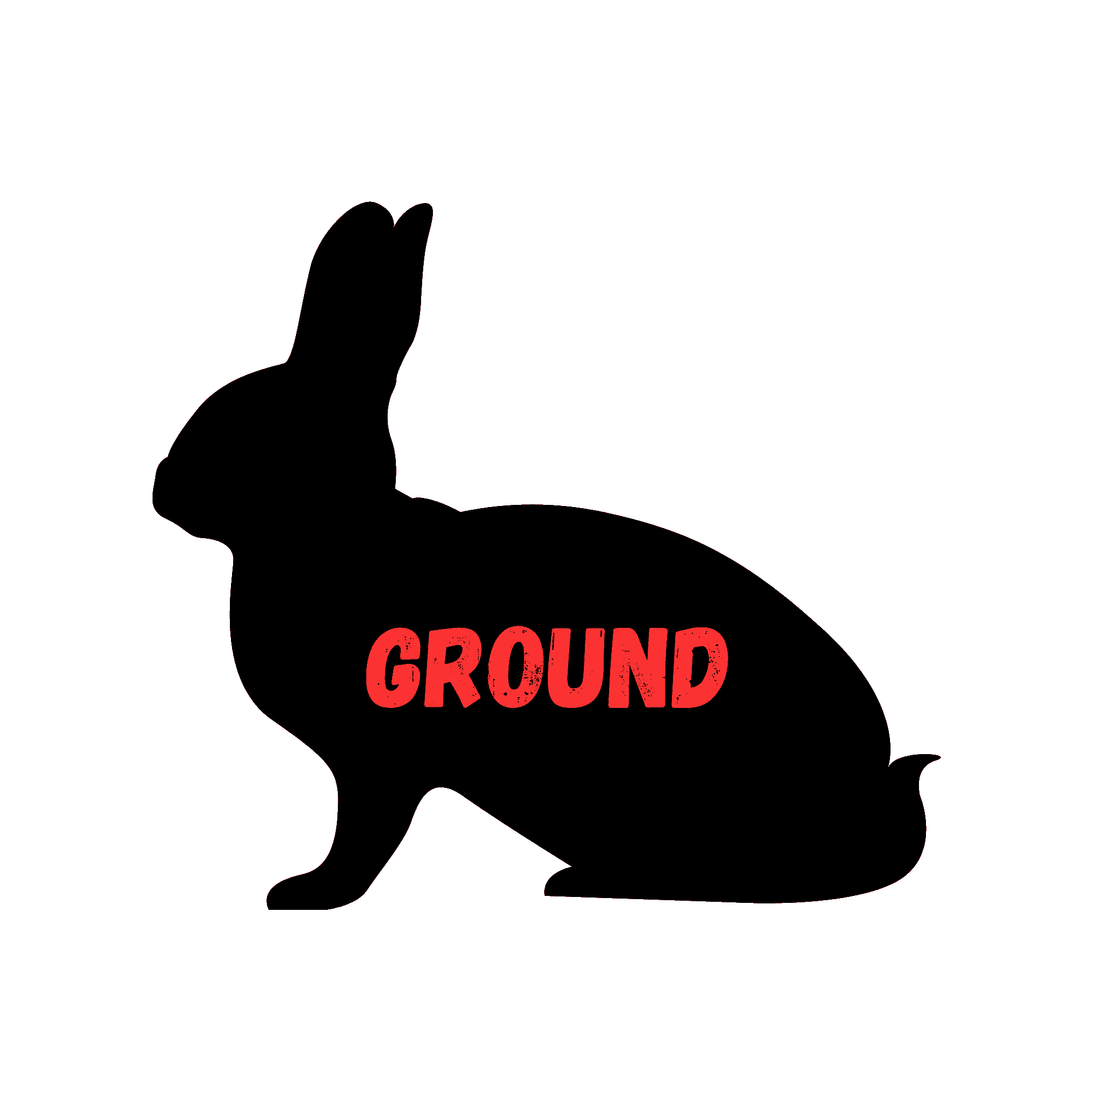 Gound Rabbit (1 lb Container) - White's Family Farmhouse 